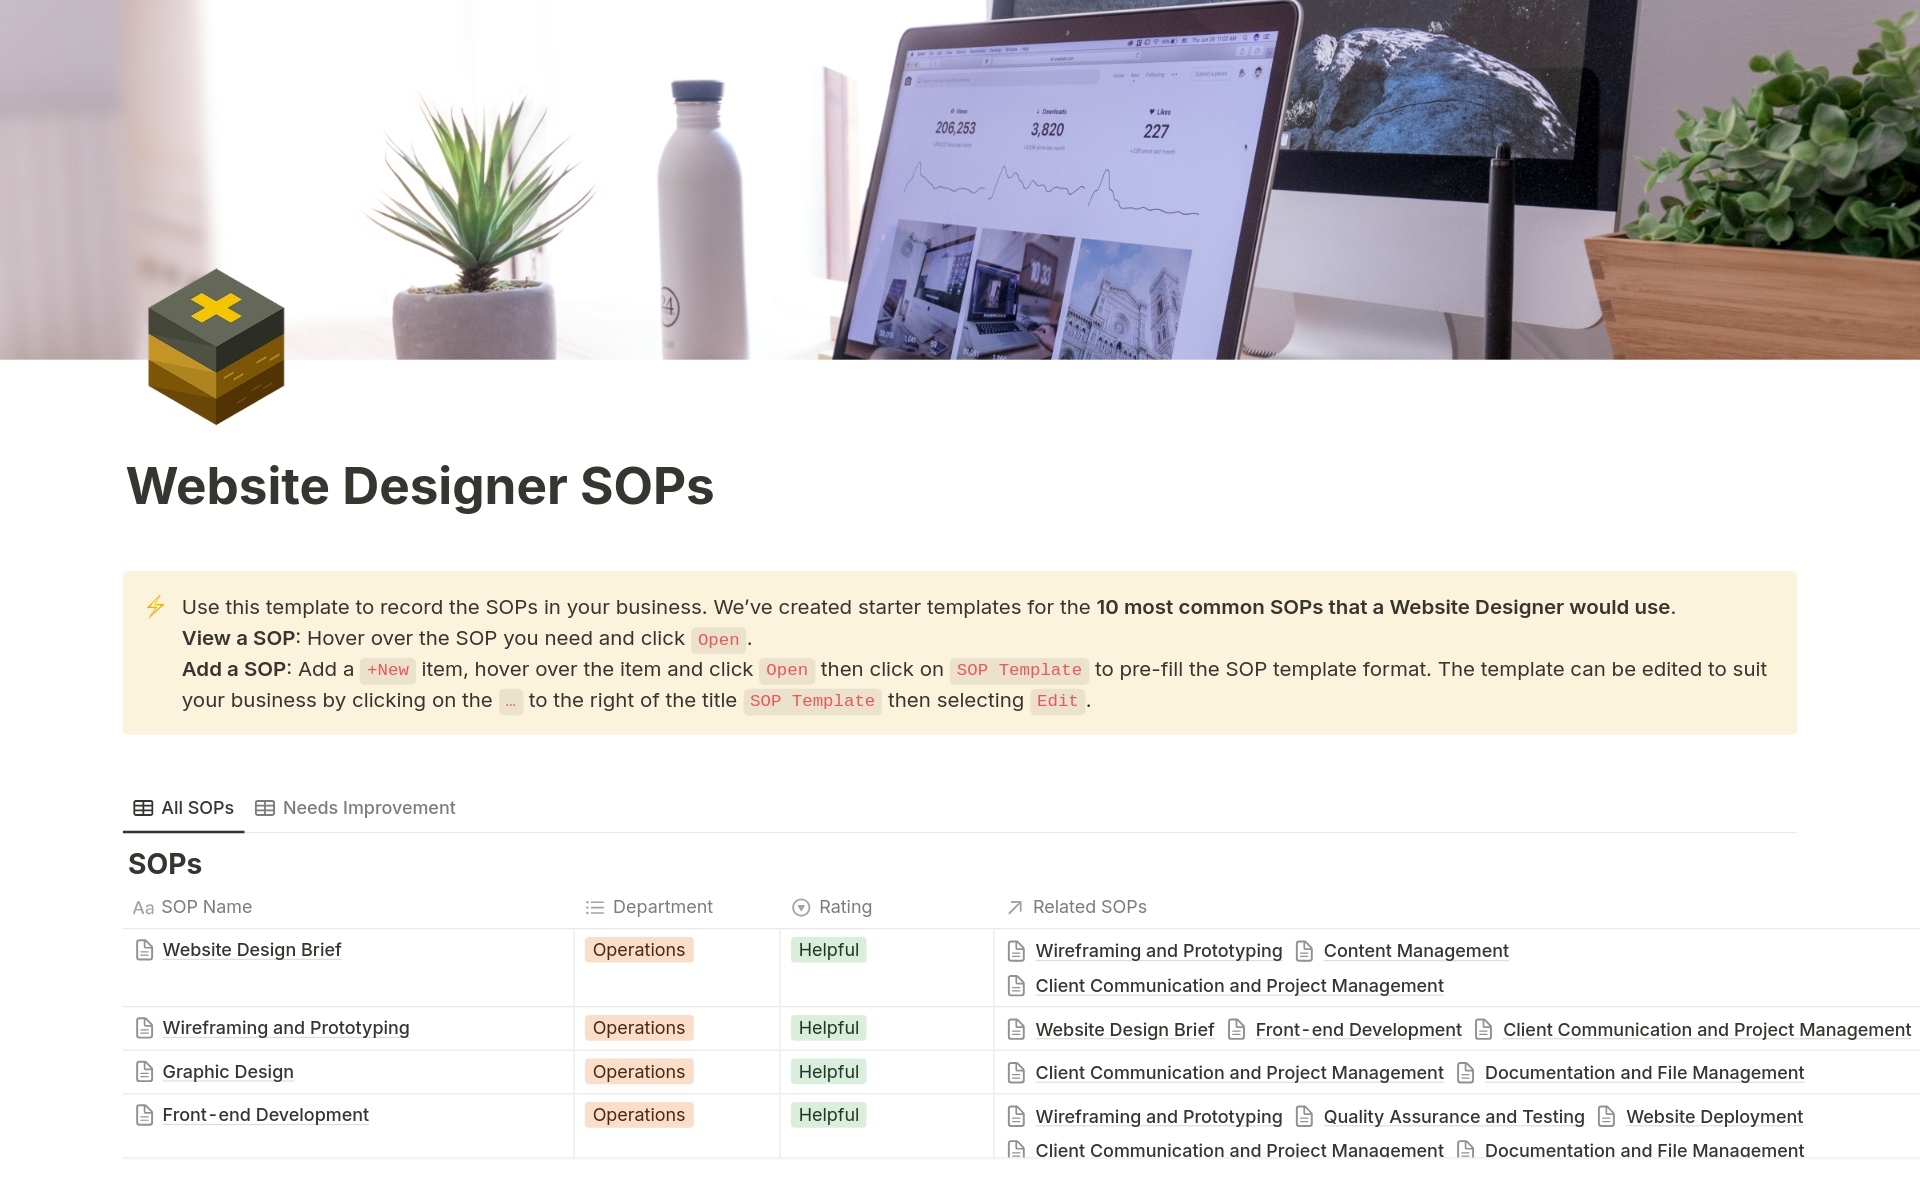 Uma prévia do modelo para Website Designer SOPs